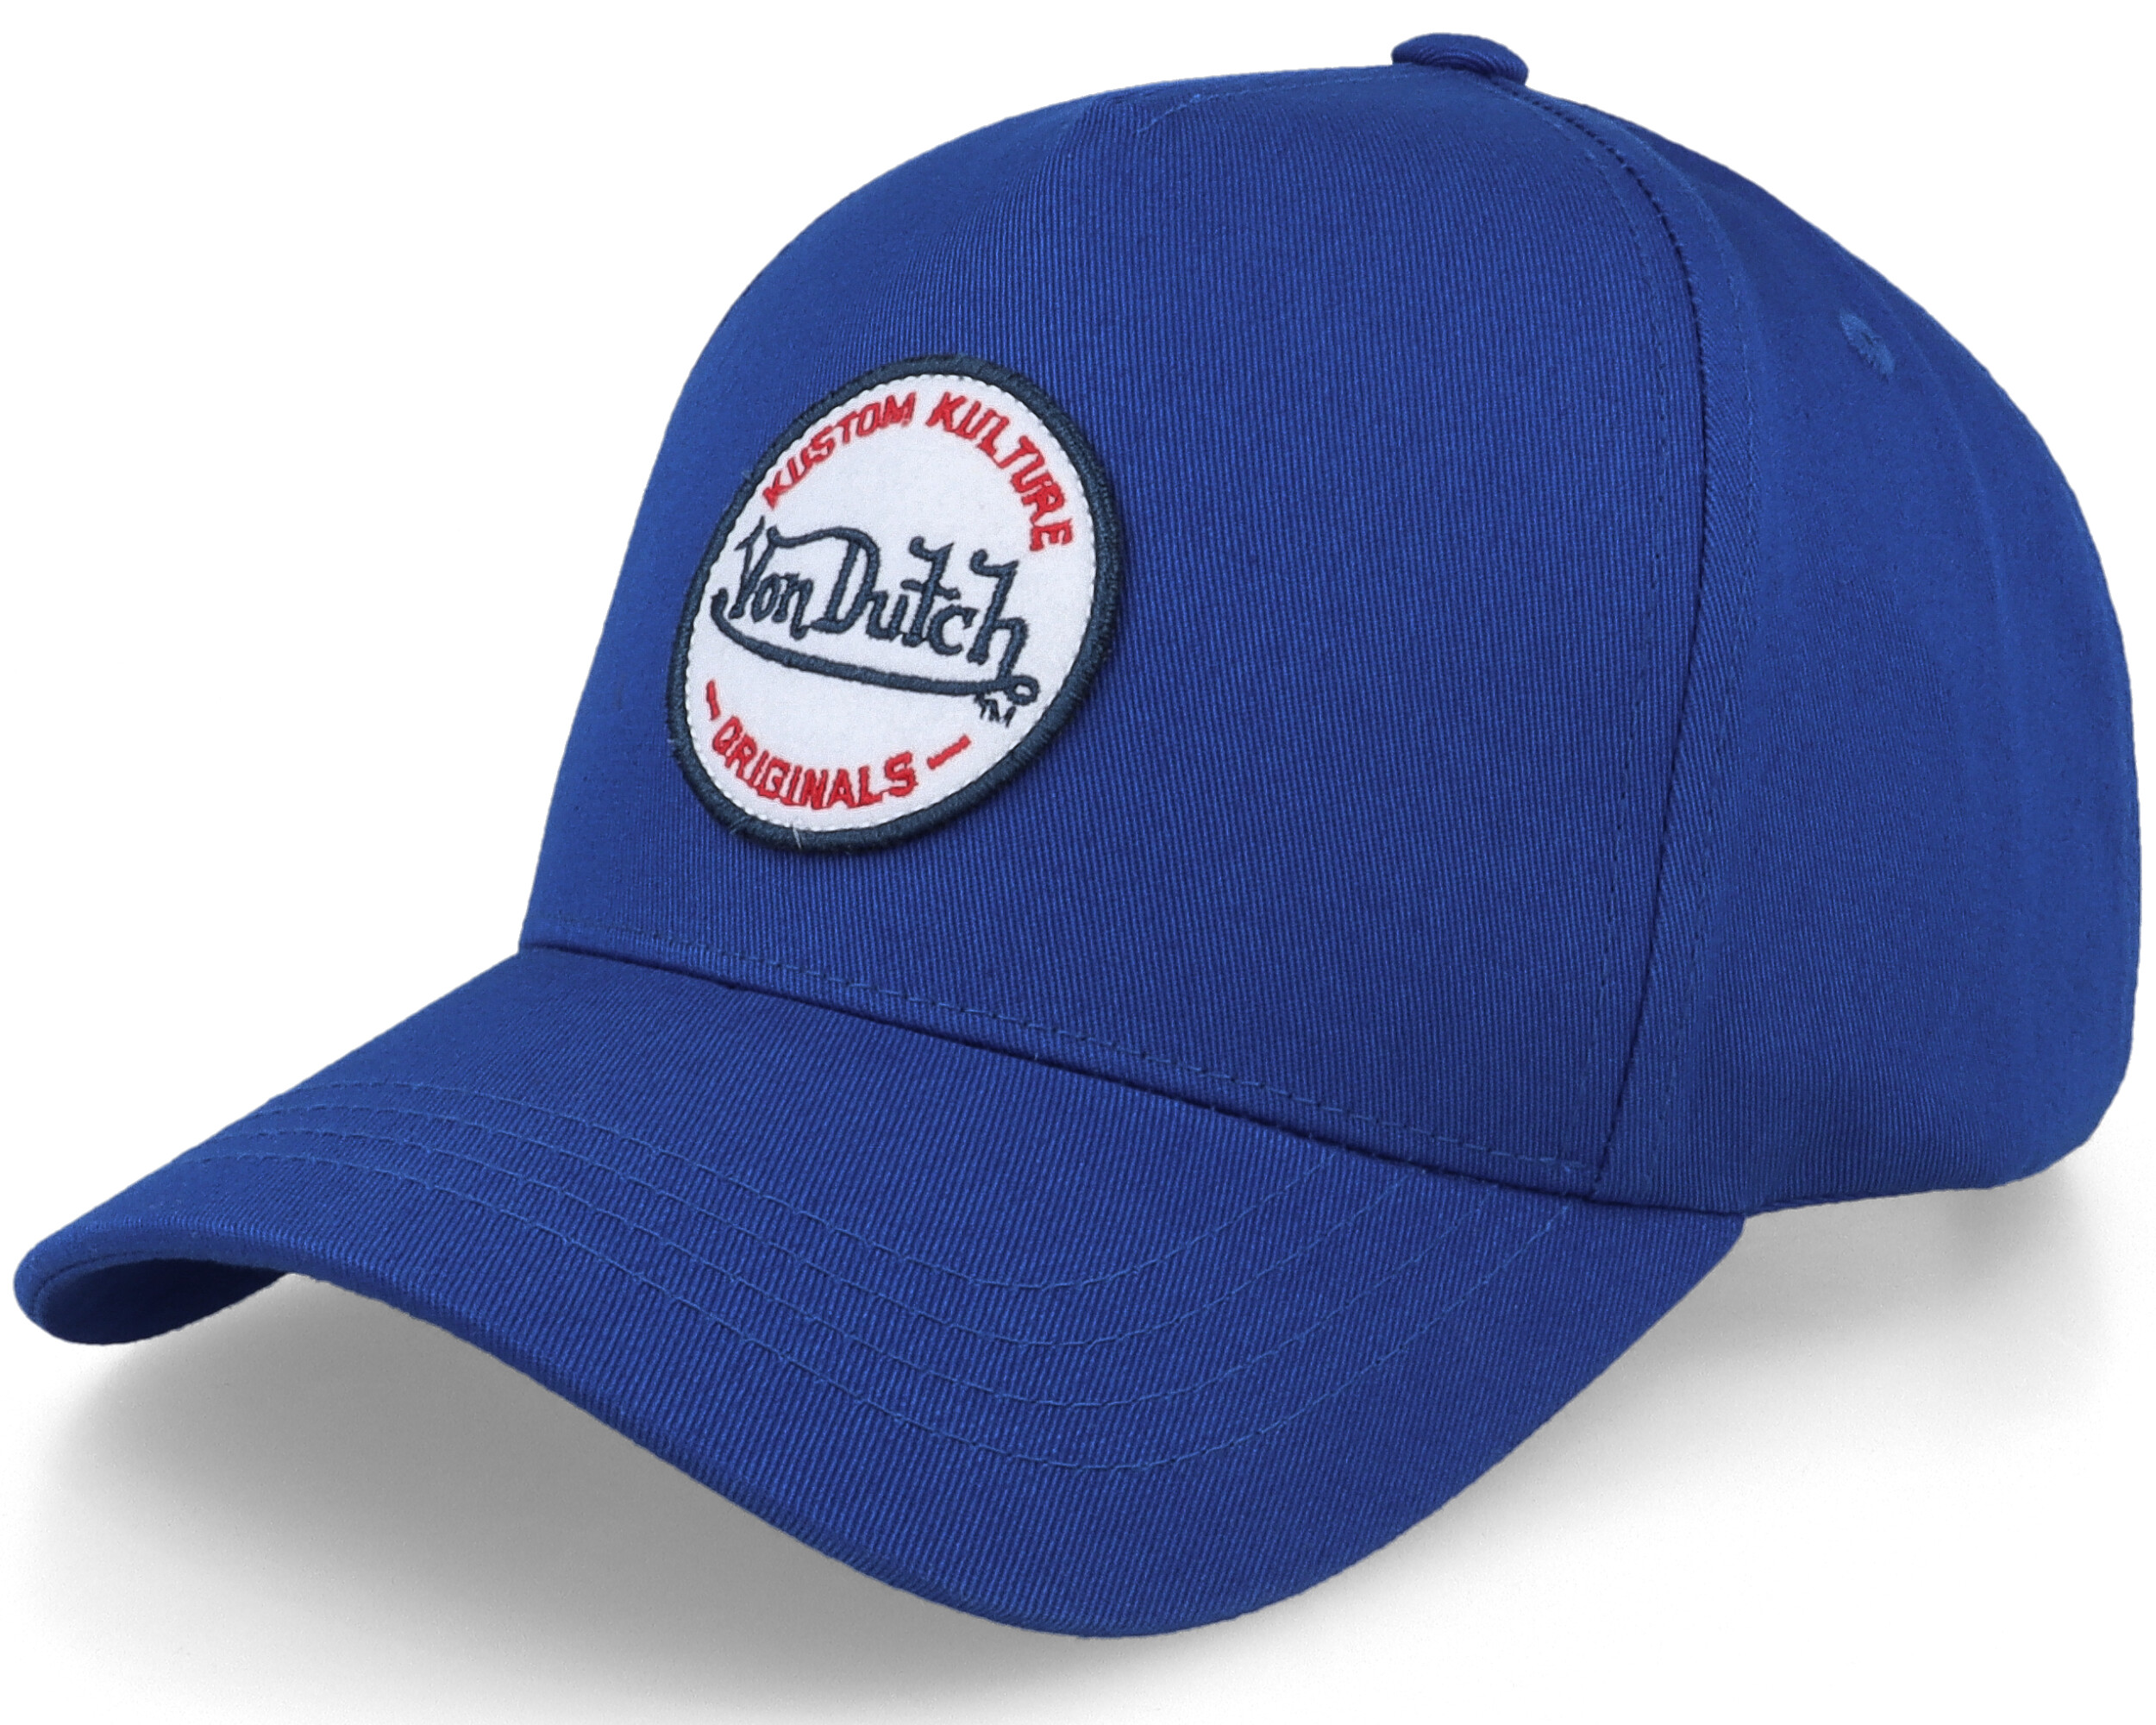 Round Patch Royal Blue Adjustable - Von Dutch cap